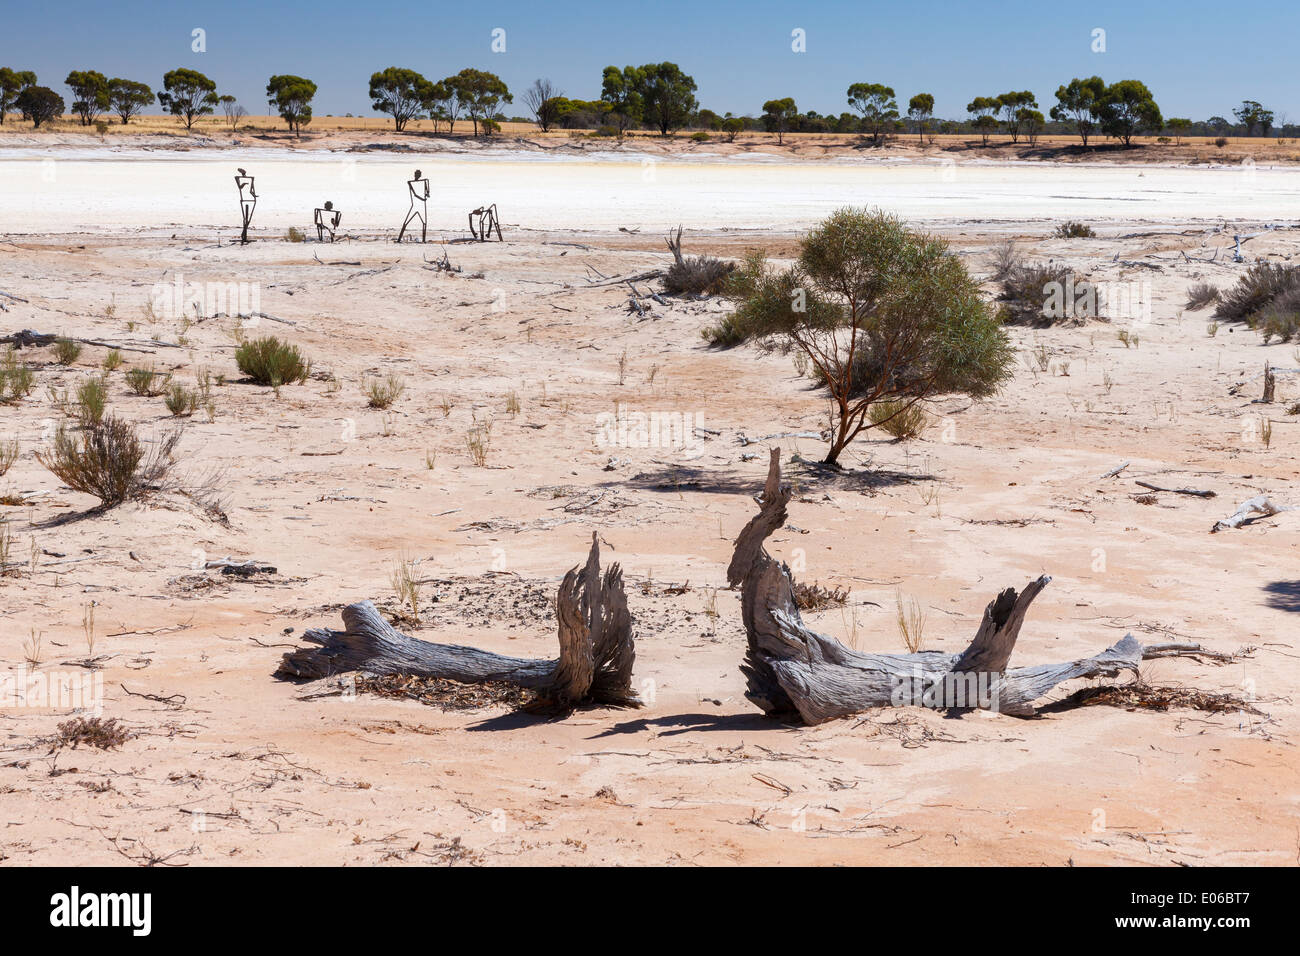 Sculptures faites à partir de la ferraille sur le bord d'un lac salé, dans l'ouest de l'Australie. Banque D'Images